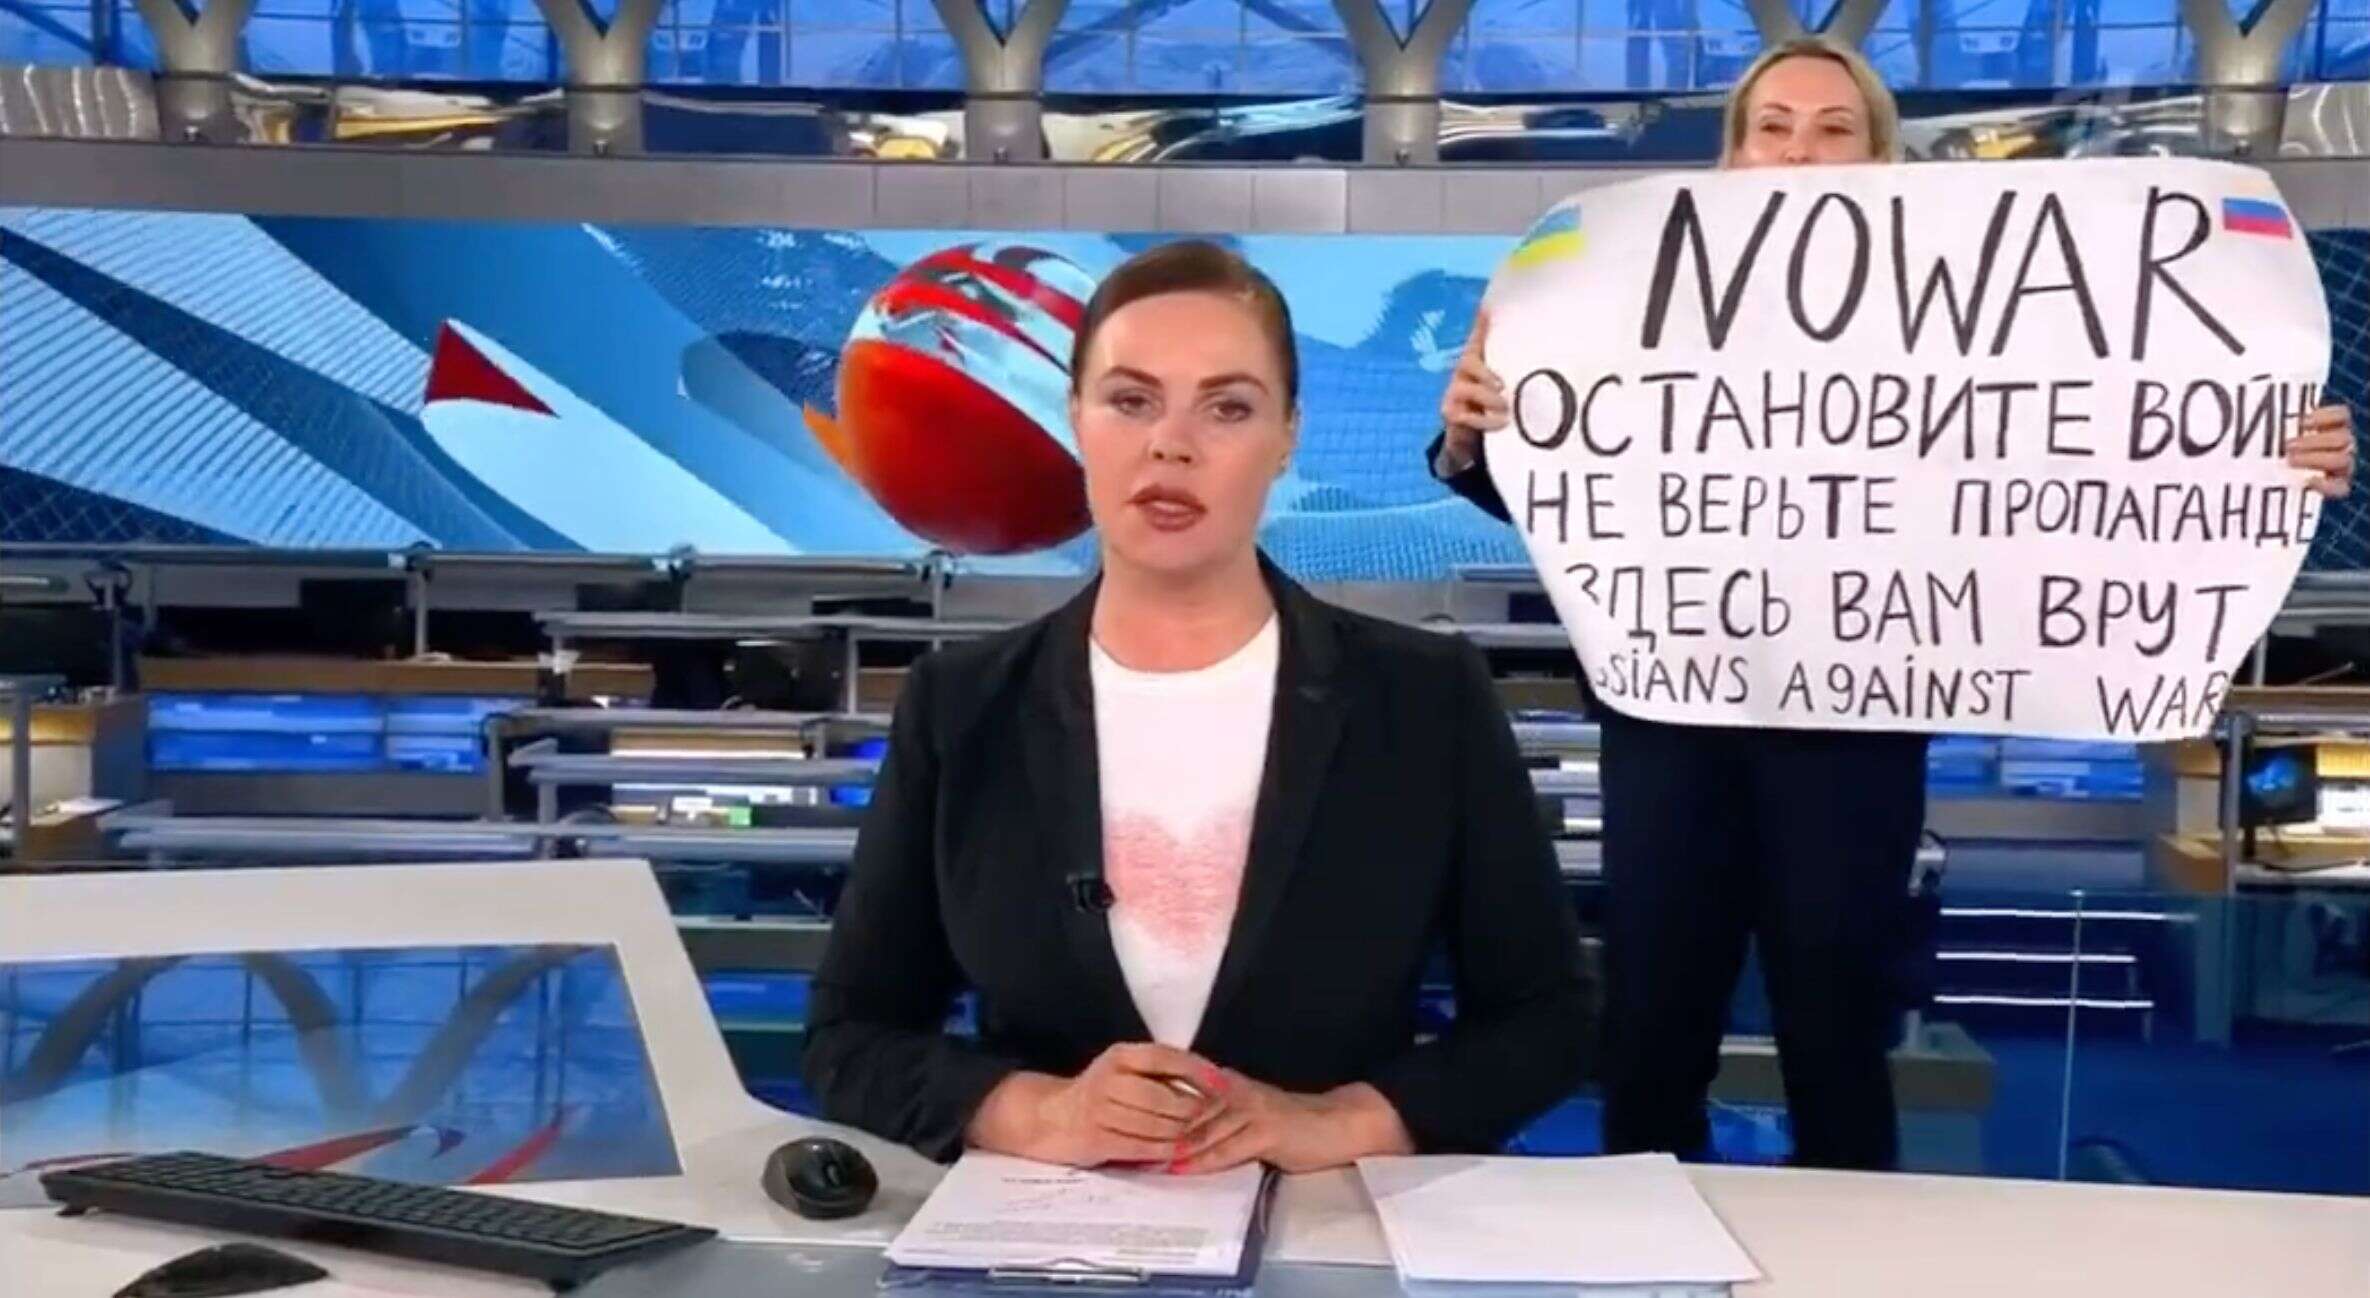 Marina Ovsiannikova, journaliste pour la principale chaîne de Russie, Pervi Kanal, avait interrompu le journal télévisé en diffusant un message contre la guerre en Ukraine. Jugée, elle n'a écopé que d'une faible amende.